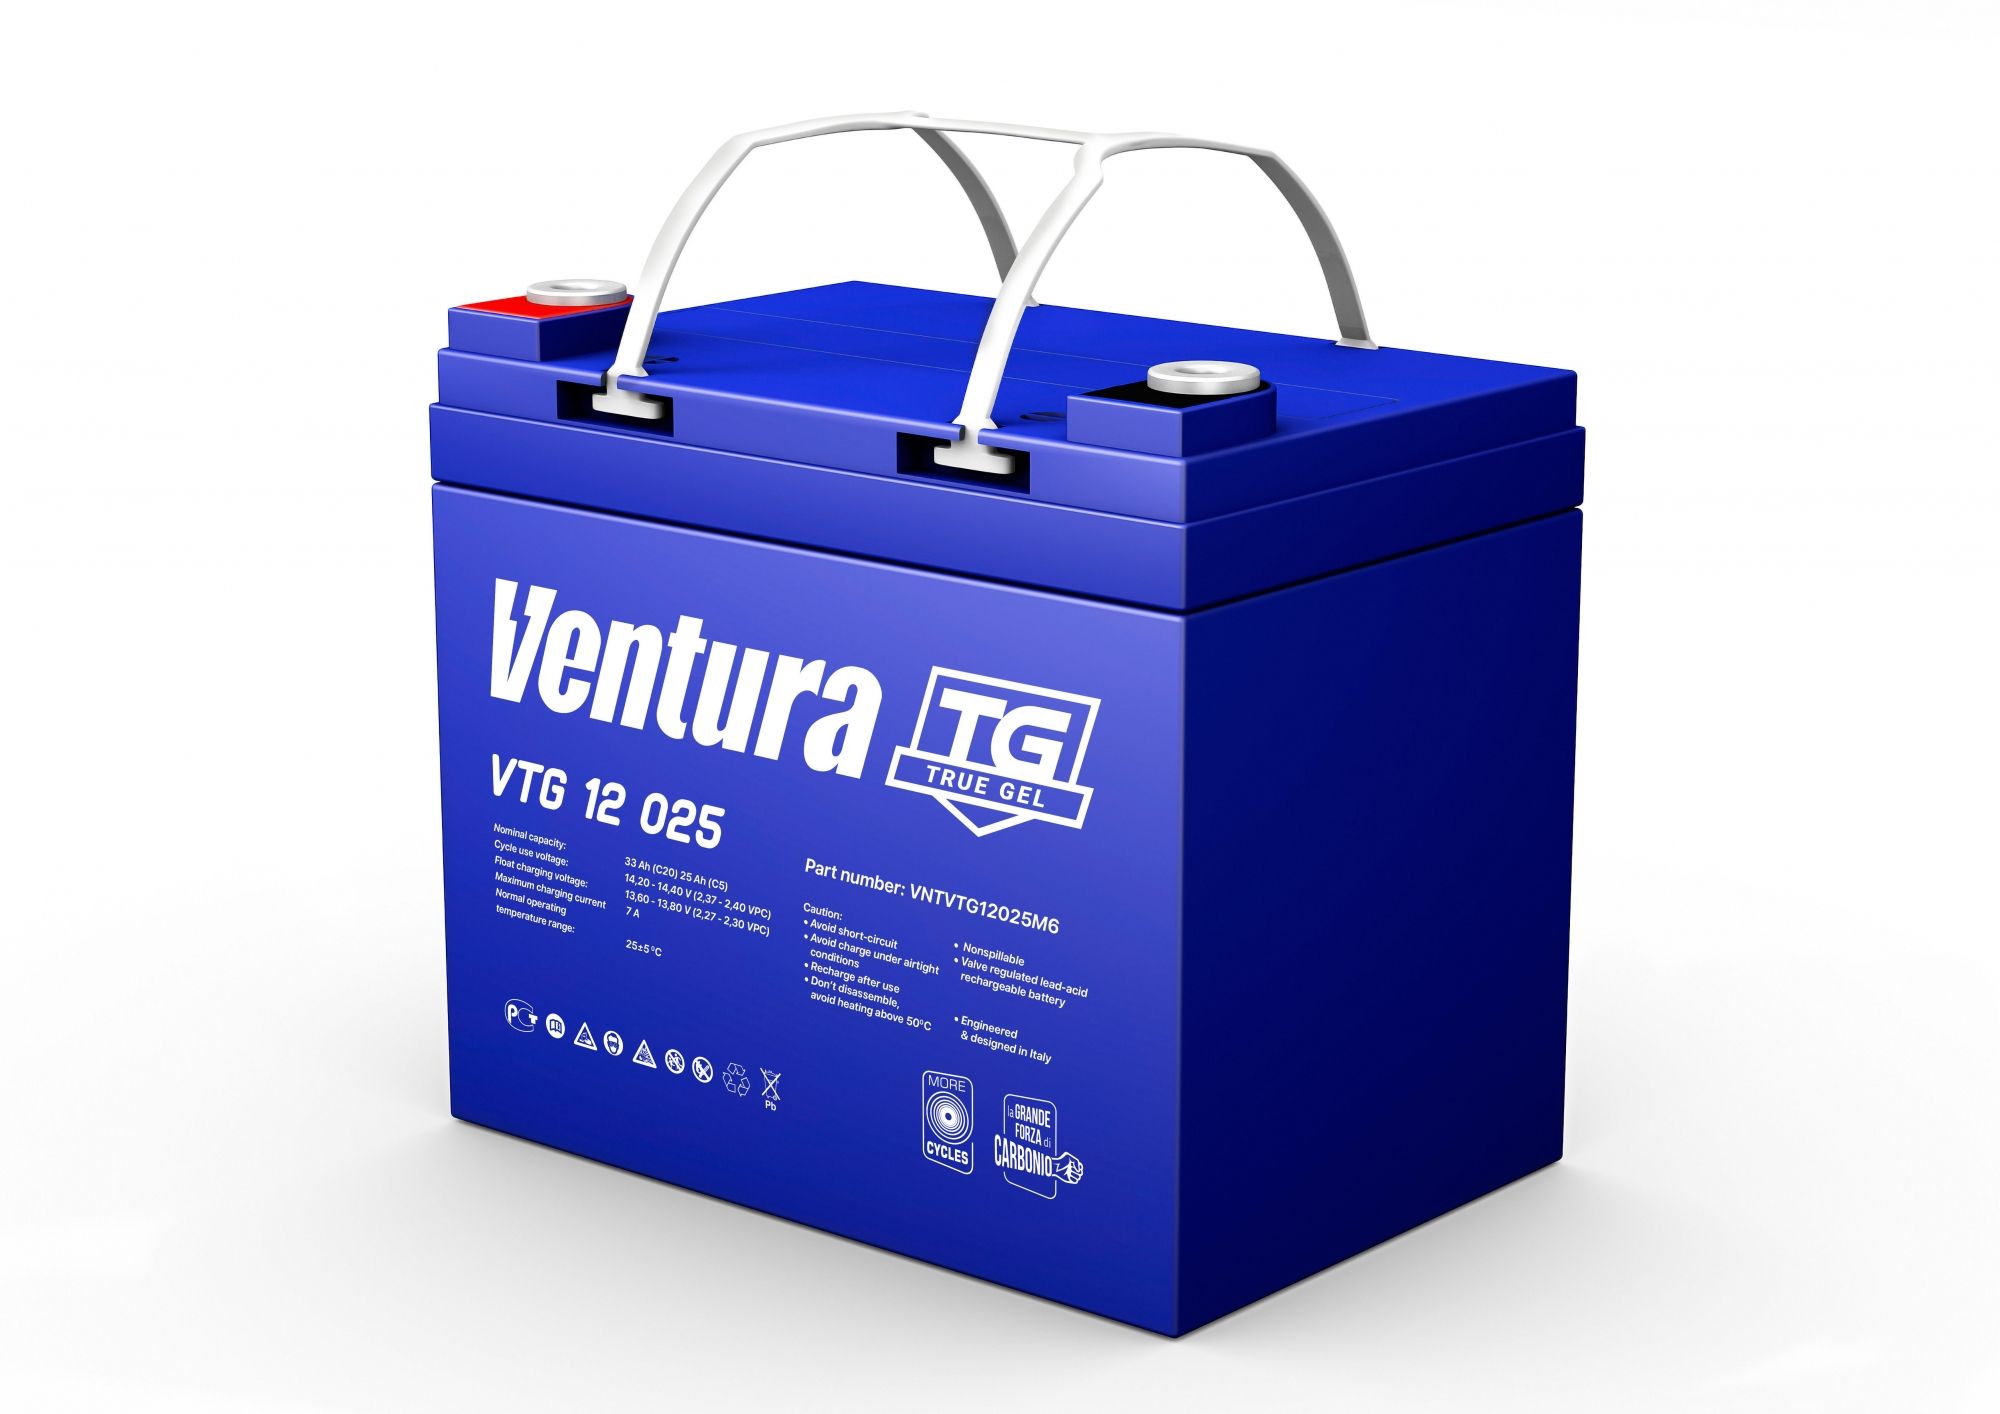 Купить Аккумулятор Ventura VTG 12 025 с доставкой по РФ. В интернет-магазине Grassmart.ru